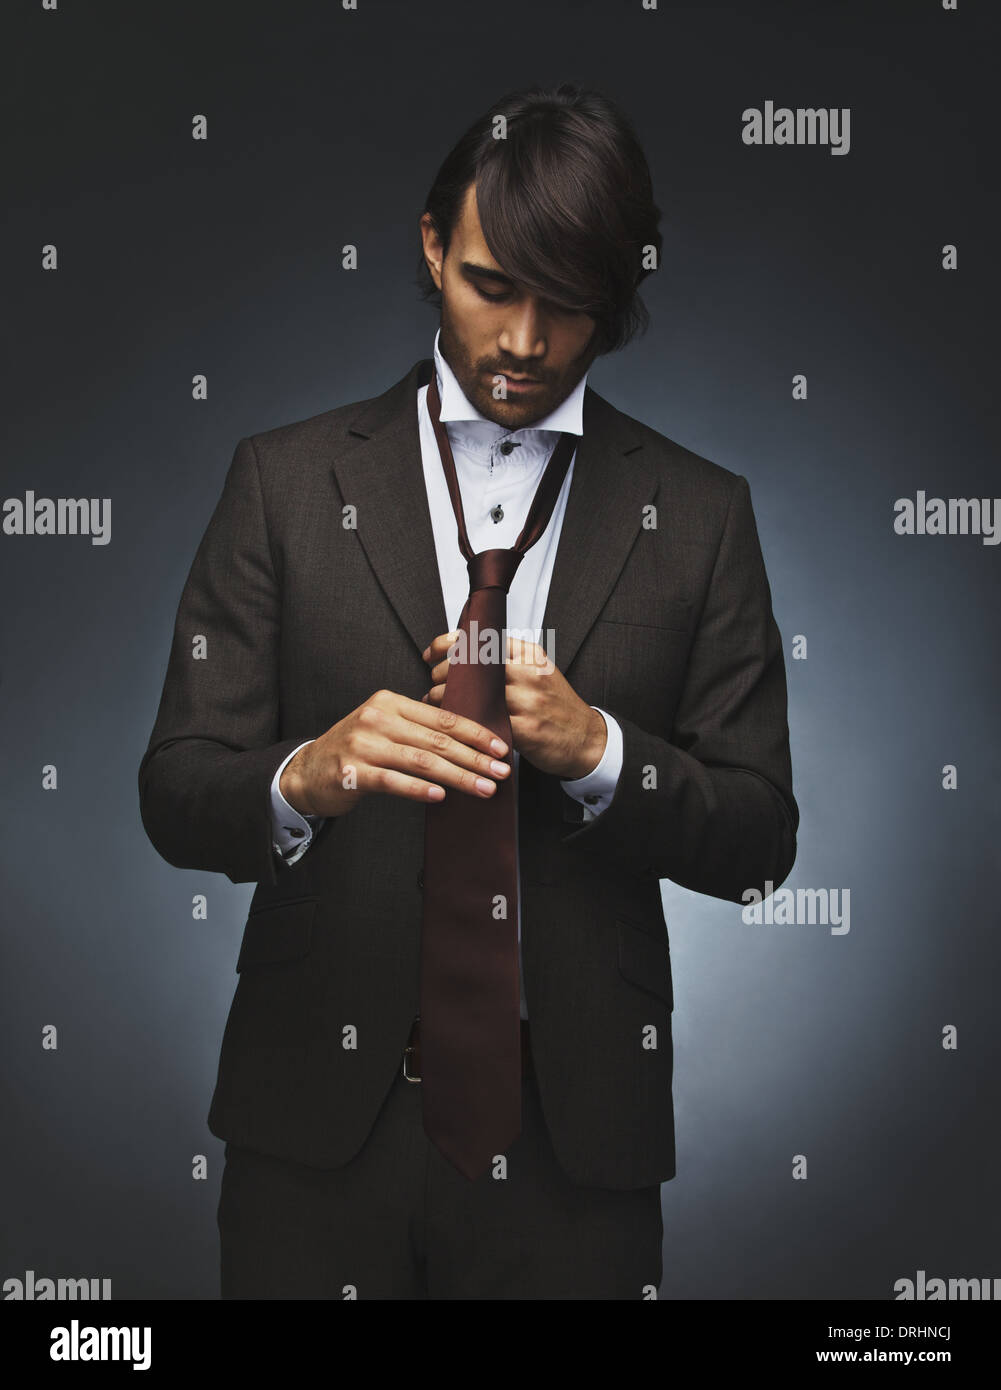 Bild des jungen Mannes Krawatte zu binden. Gemischte Rassen Fotomodell in stilvollen Anzug anziehen auf schwarzem Hintergrund. Stockfoto